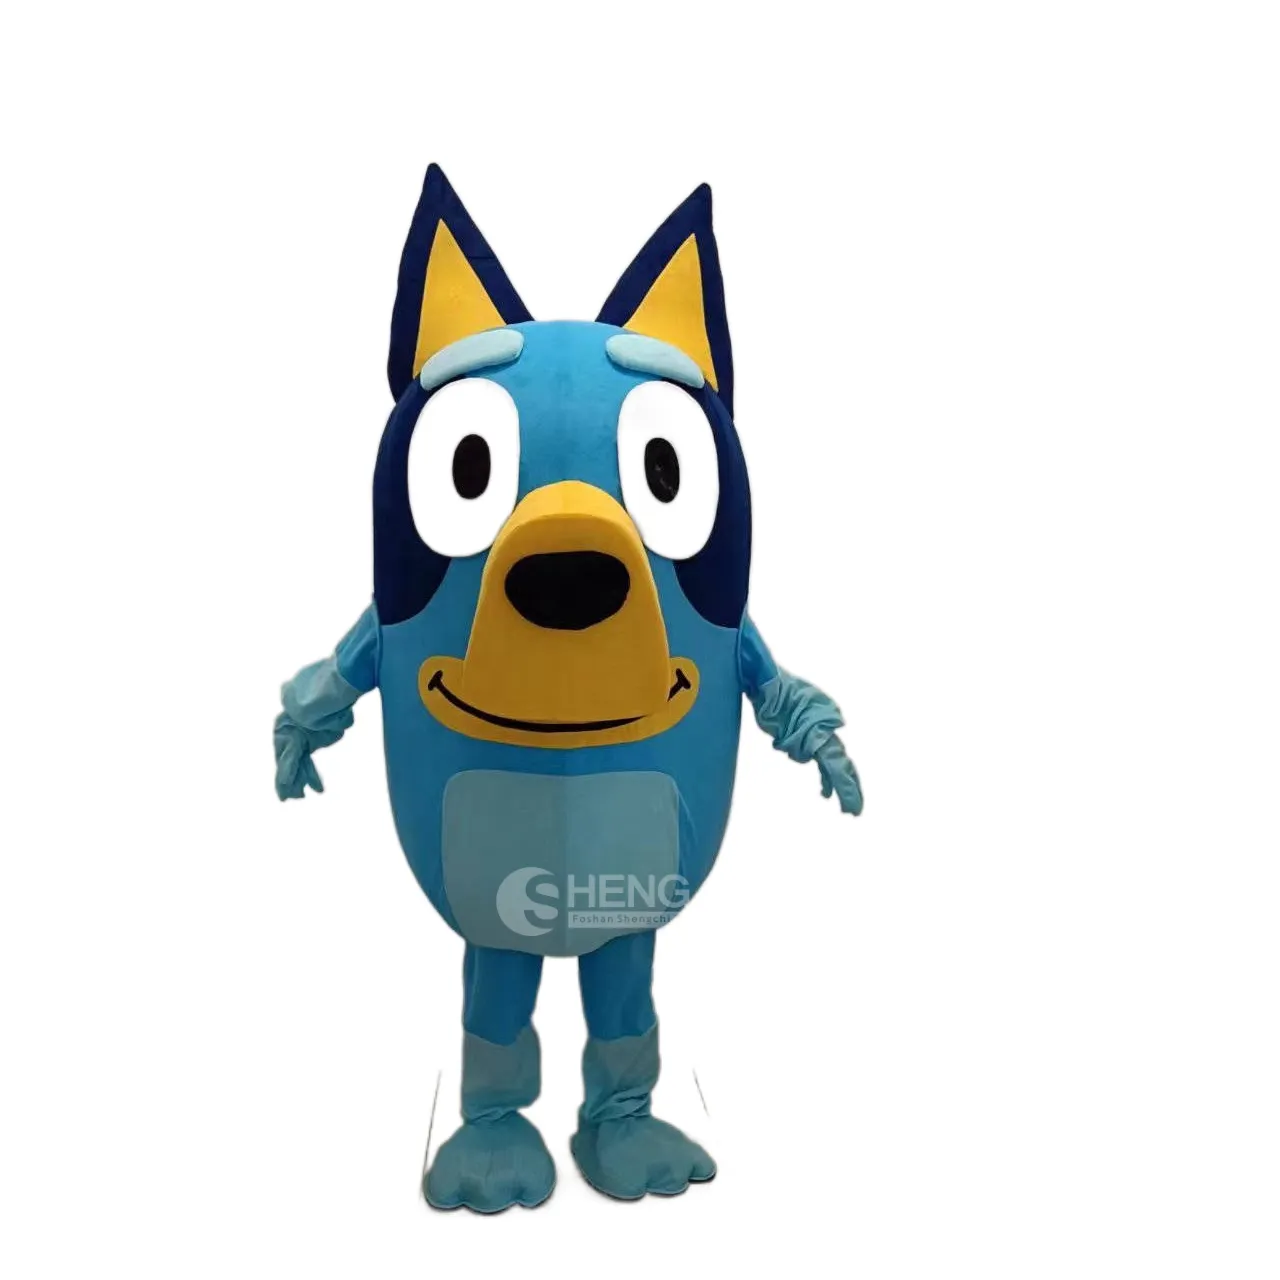 MOQ 1 buah penjualan terlaris film keluarga Bingo karakter kartun kostum maskot bluey mewah untuk dijual